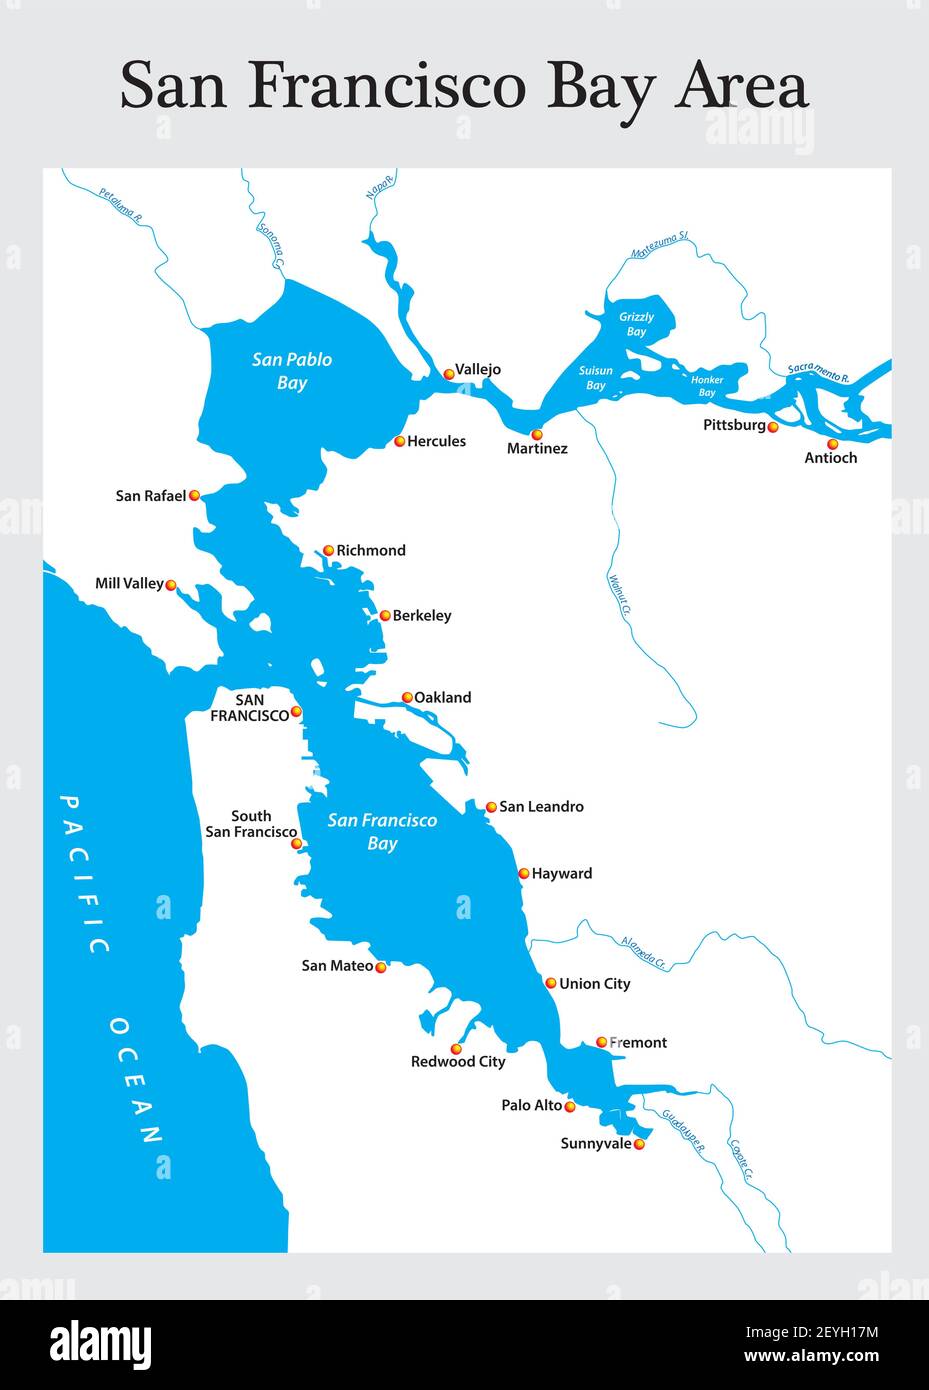 Petite carte générale de la région de la baie de San Francisco en Californie Illustration de Vecteur